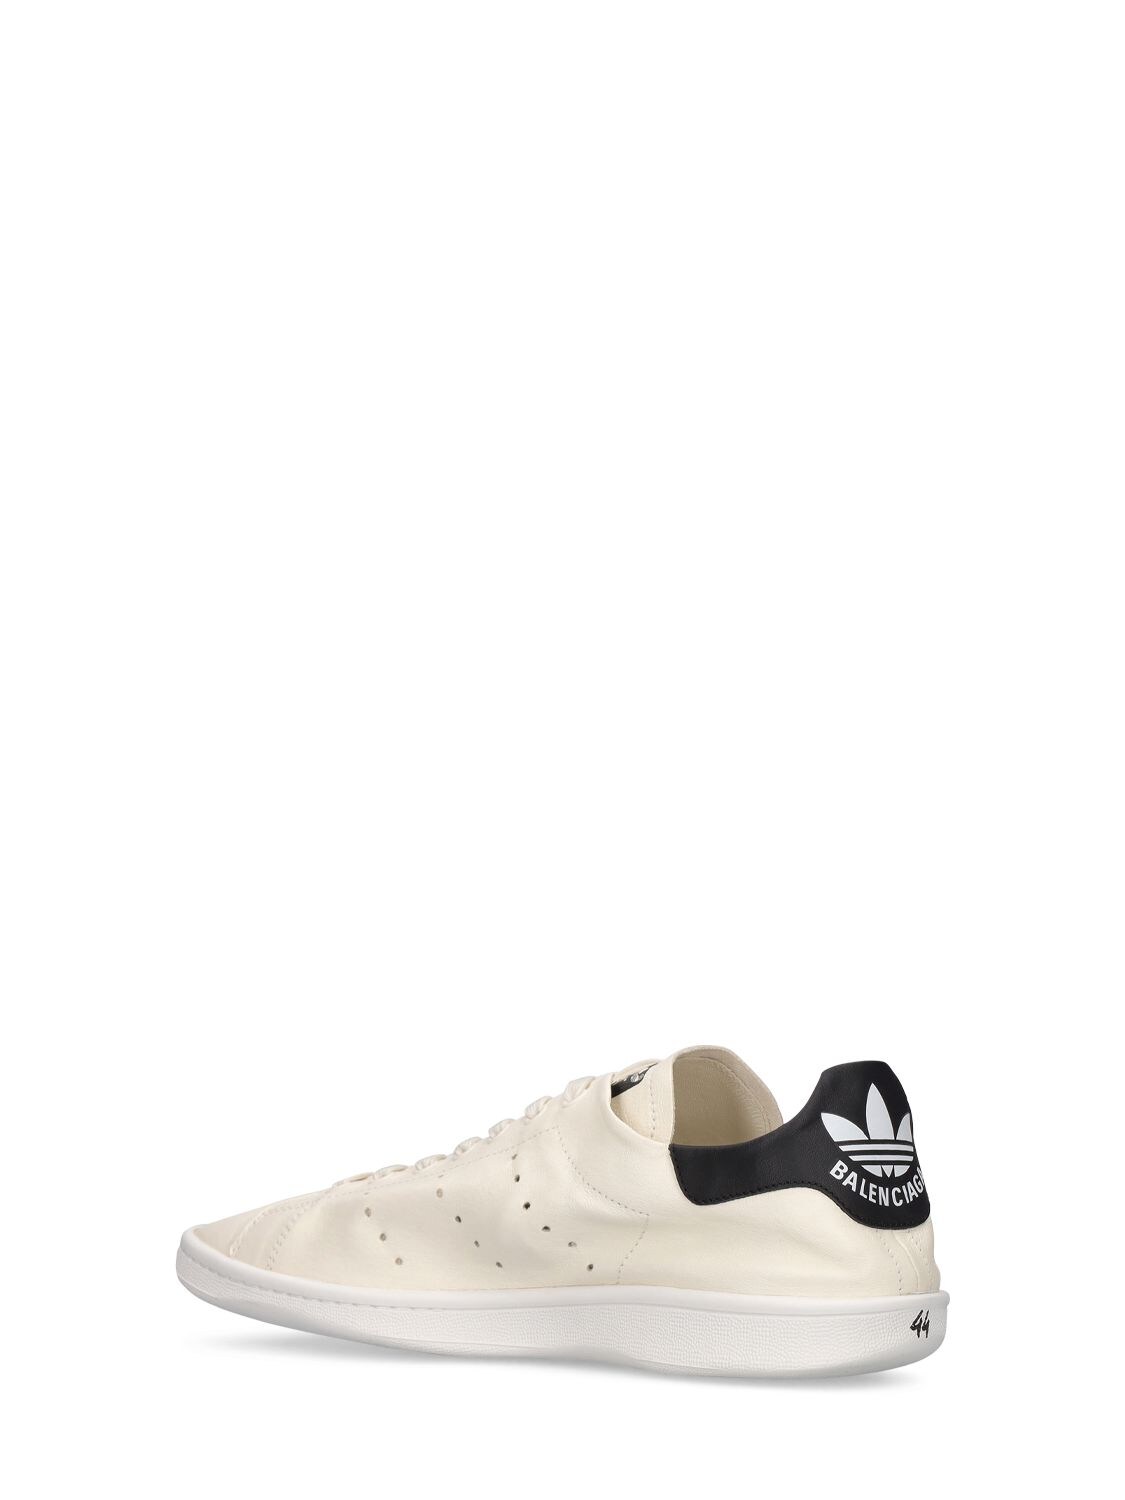 Shop Balenciaga Adidas Stan Smith Sneakers In Off White,black